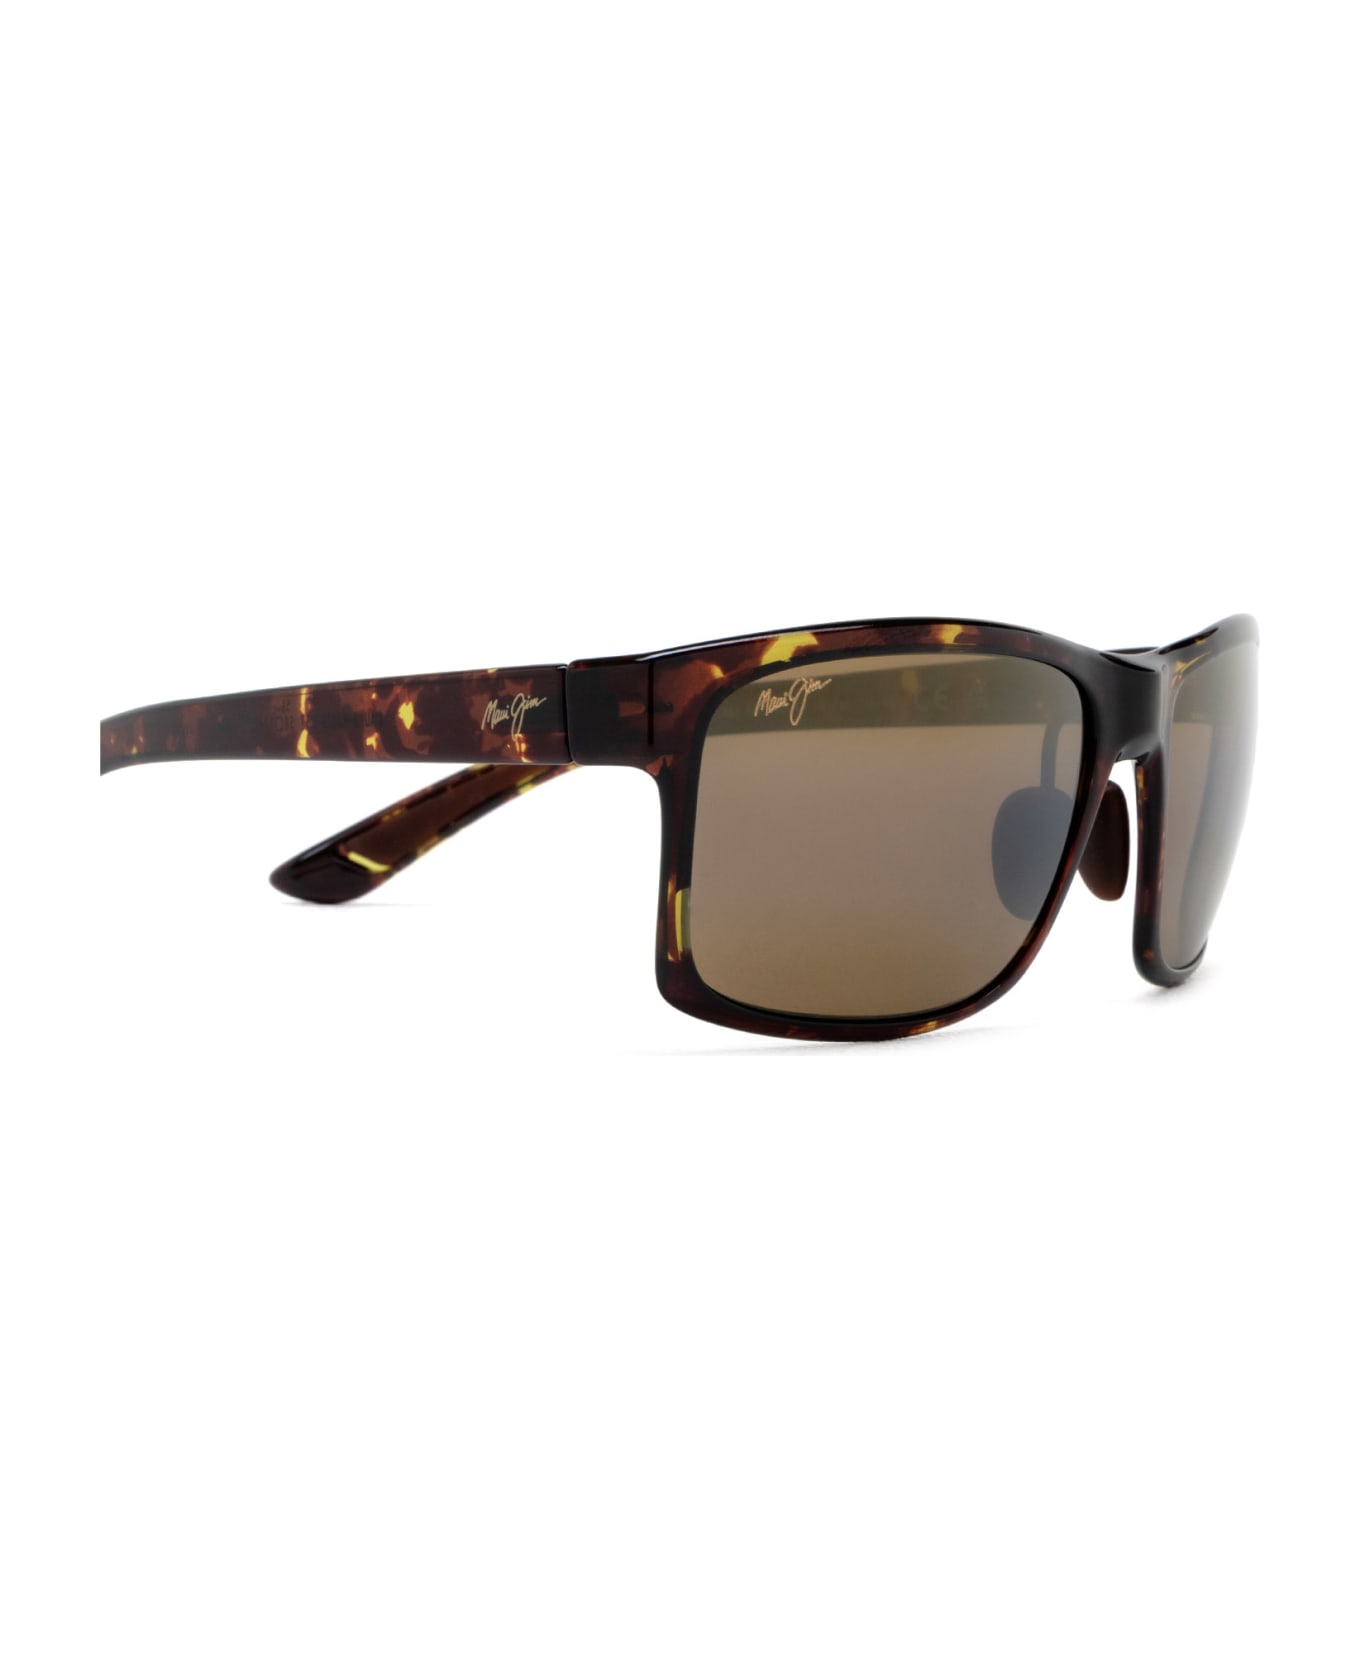 Maui Jim Mj439 Olive Tortoise Sunglasses - Olive Tortoise サングラス